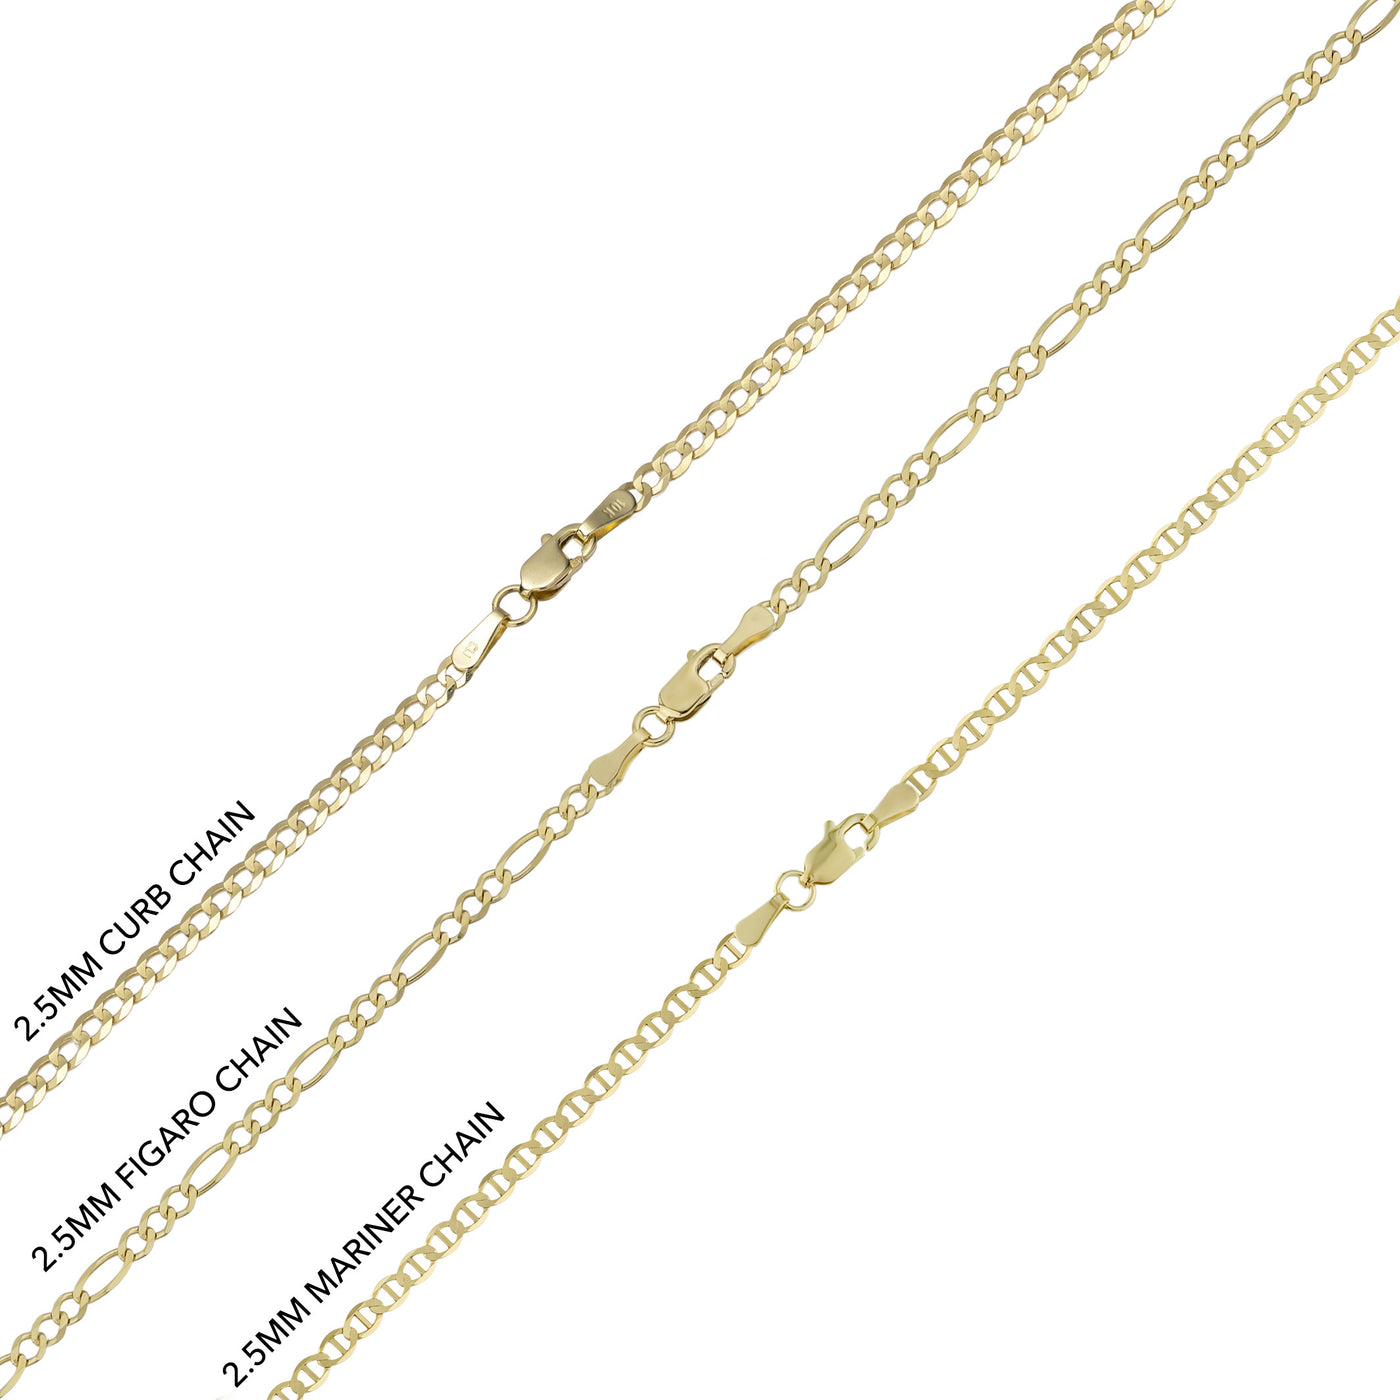 1 3/4" CZ Buddha Pendant & Chain Necklace Set 10K Yellow Gold